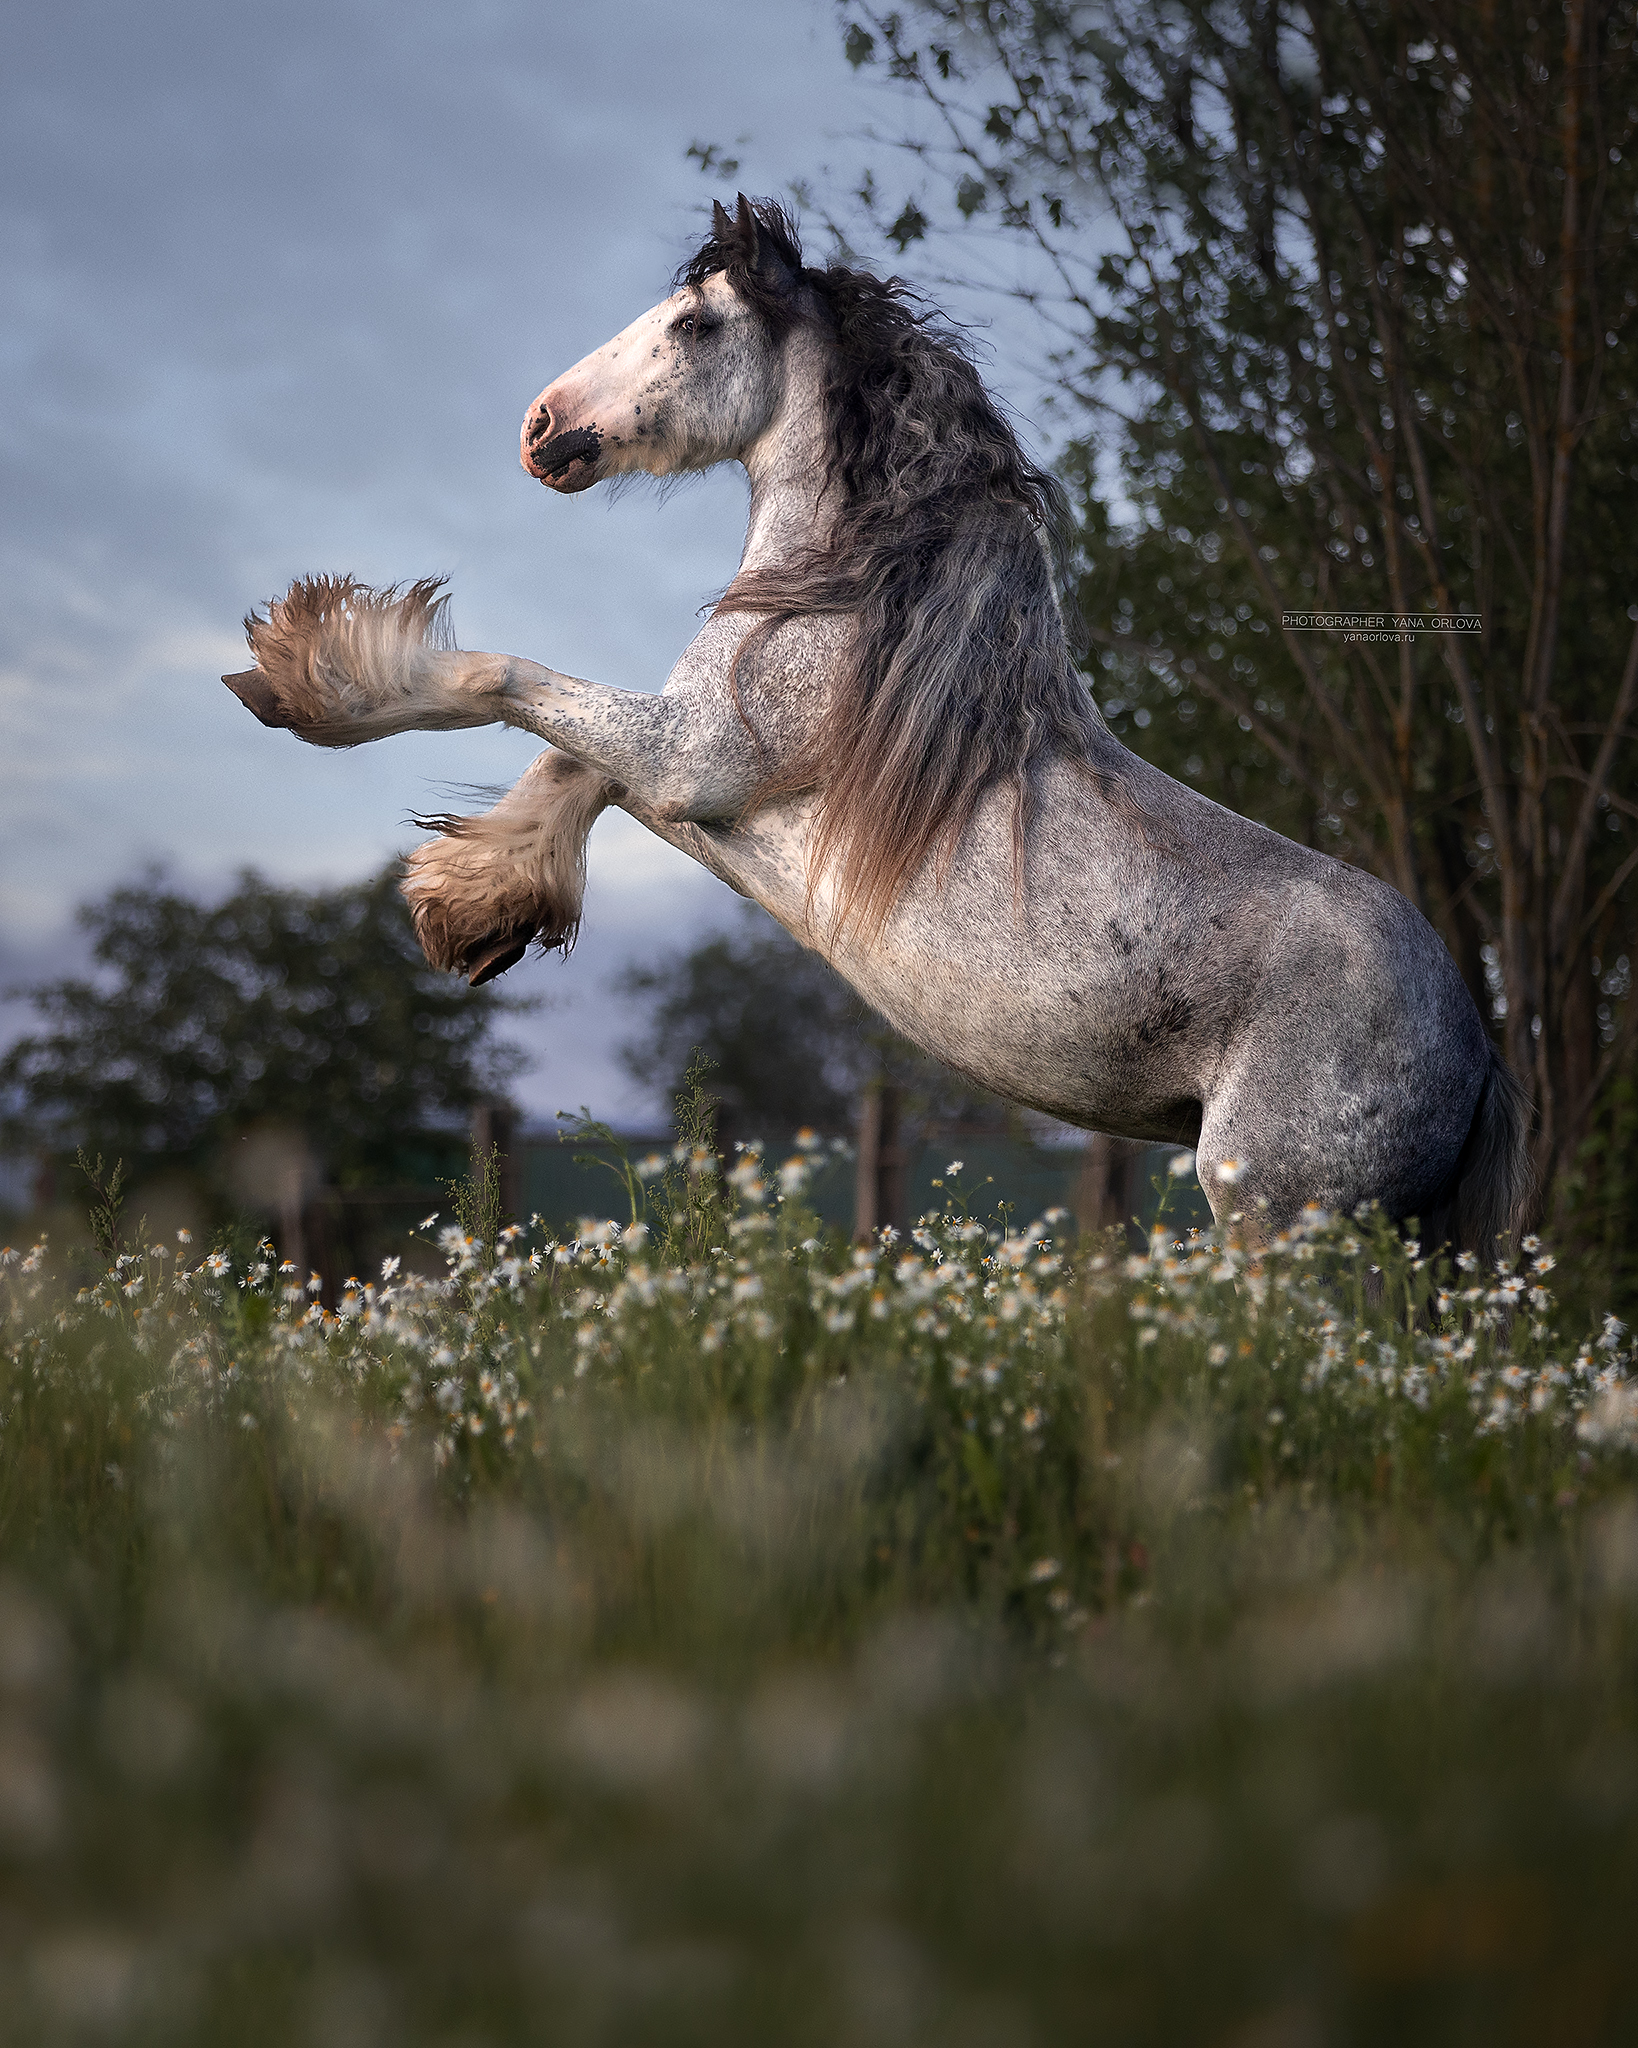 конный фотограф, лошадь, конь, лошади, конная фотография, жеребец, horse,  horses, pferd, конный фотограф яна орлова, тинкер, Яна Орлова